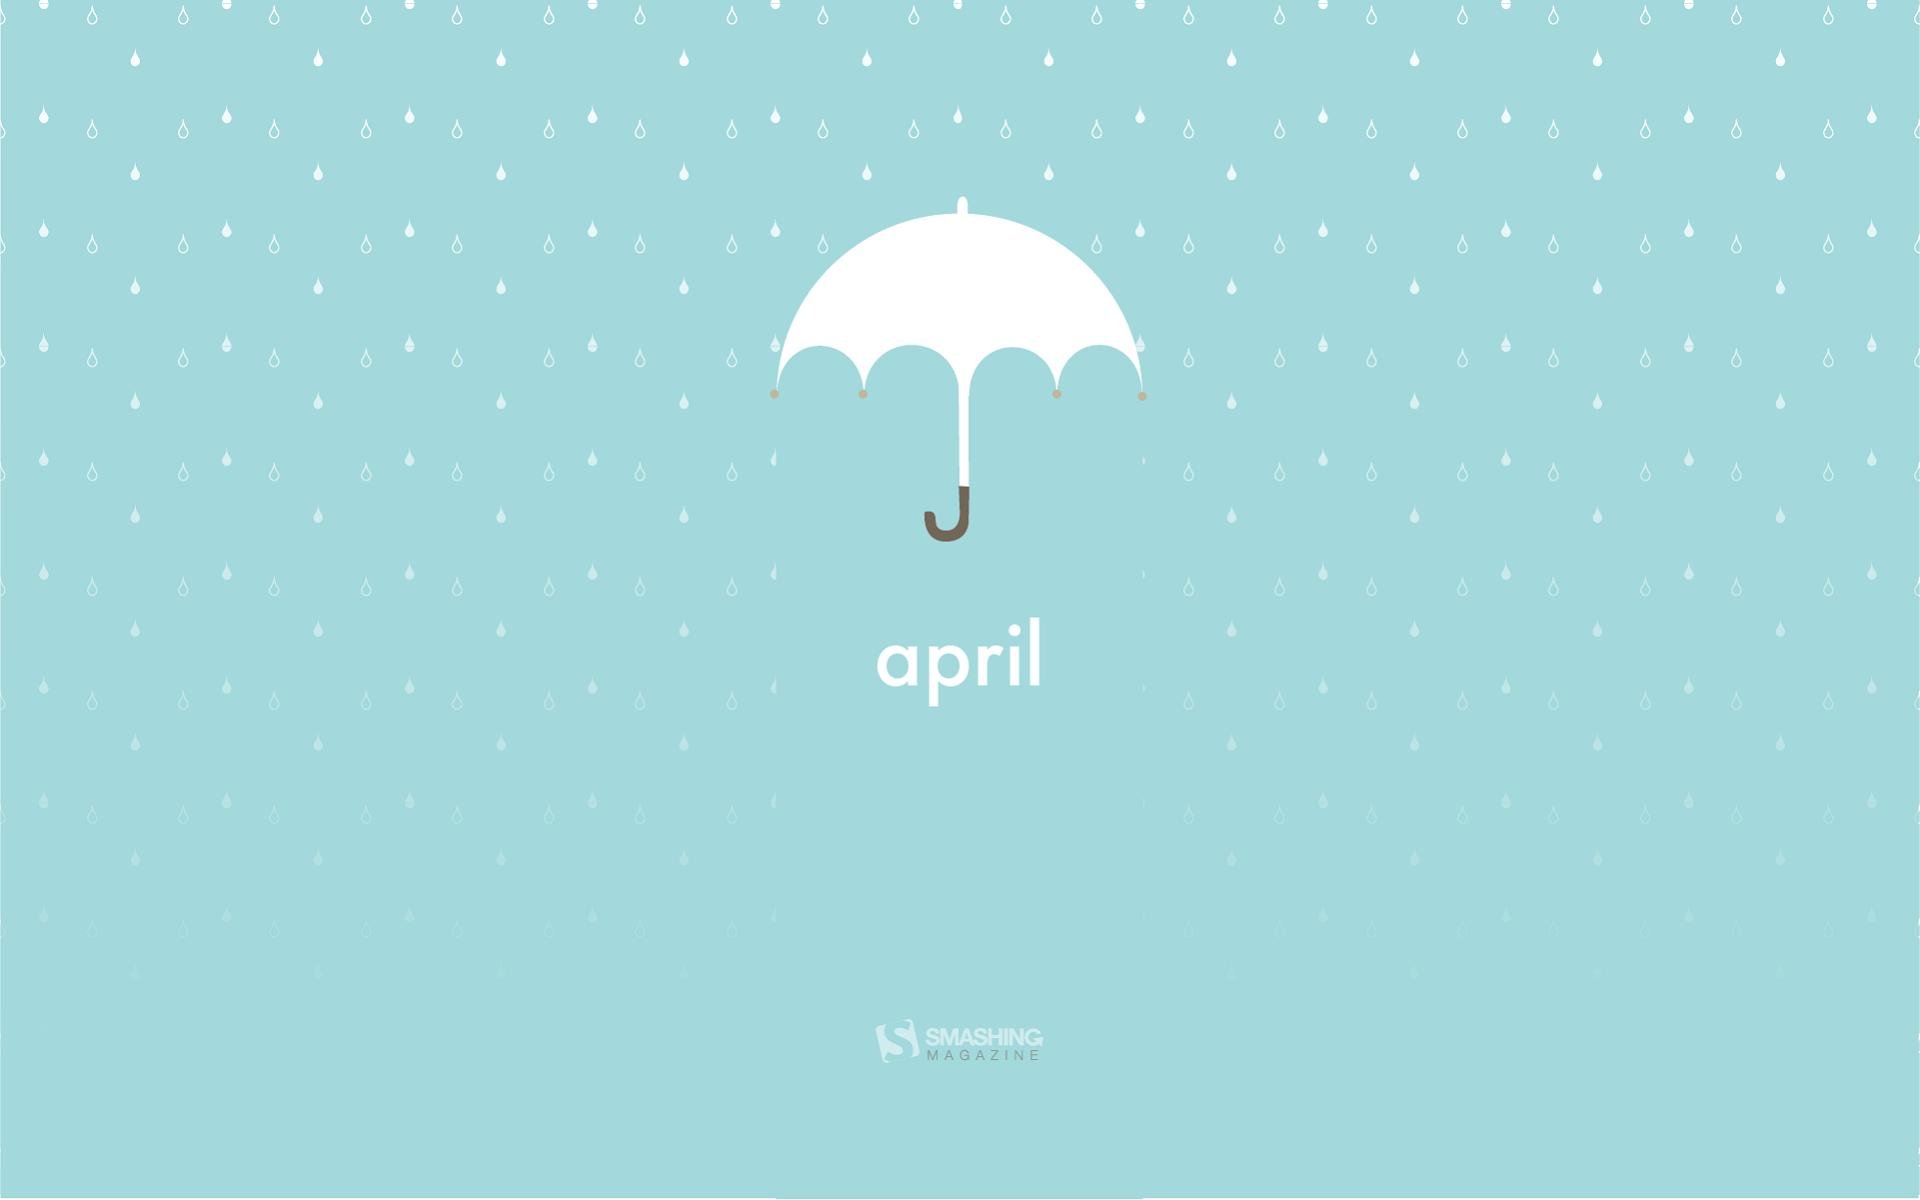 Download April Umbrella Wallpaper Free Wallpapers